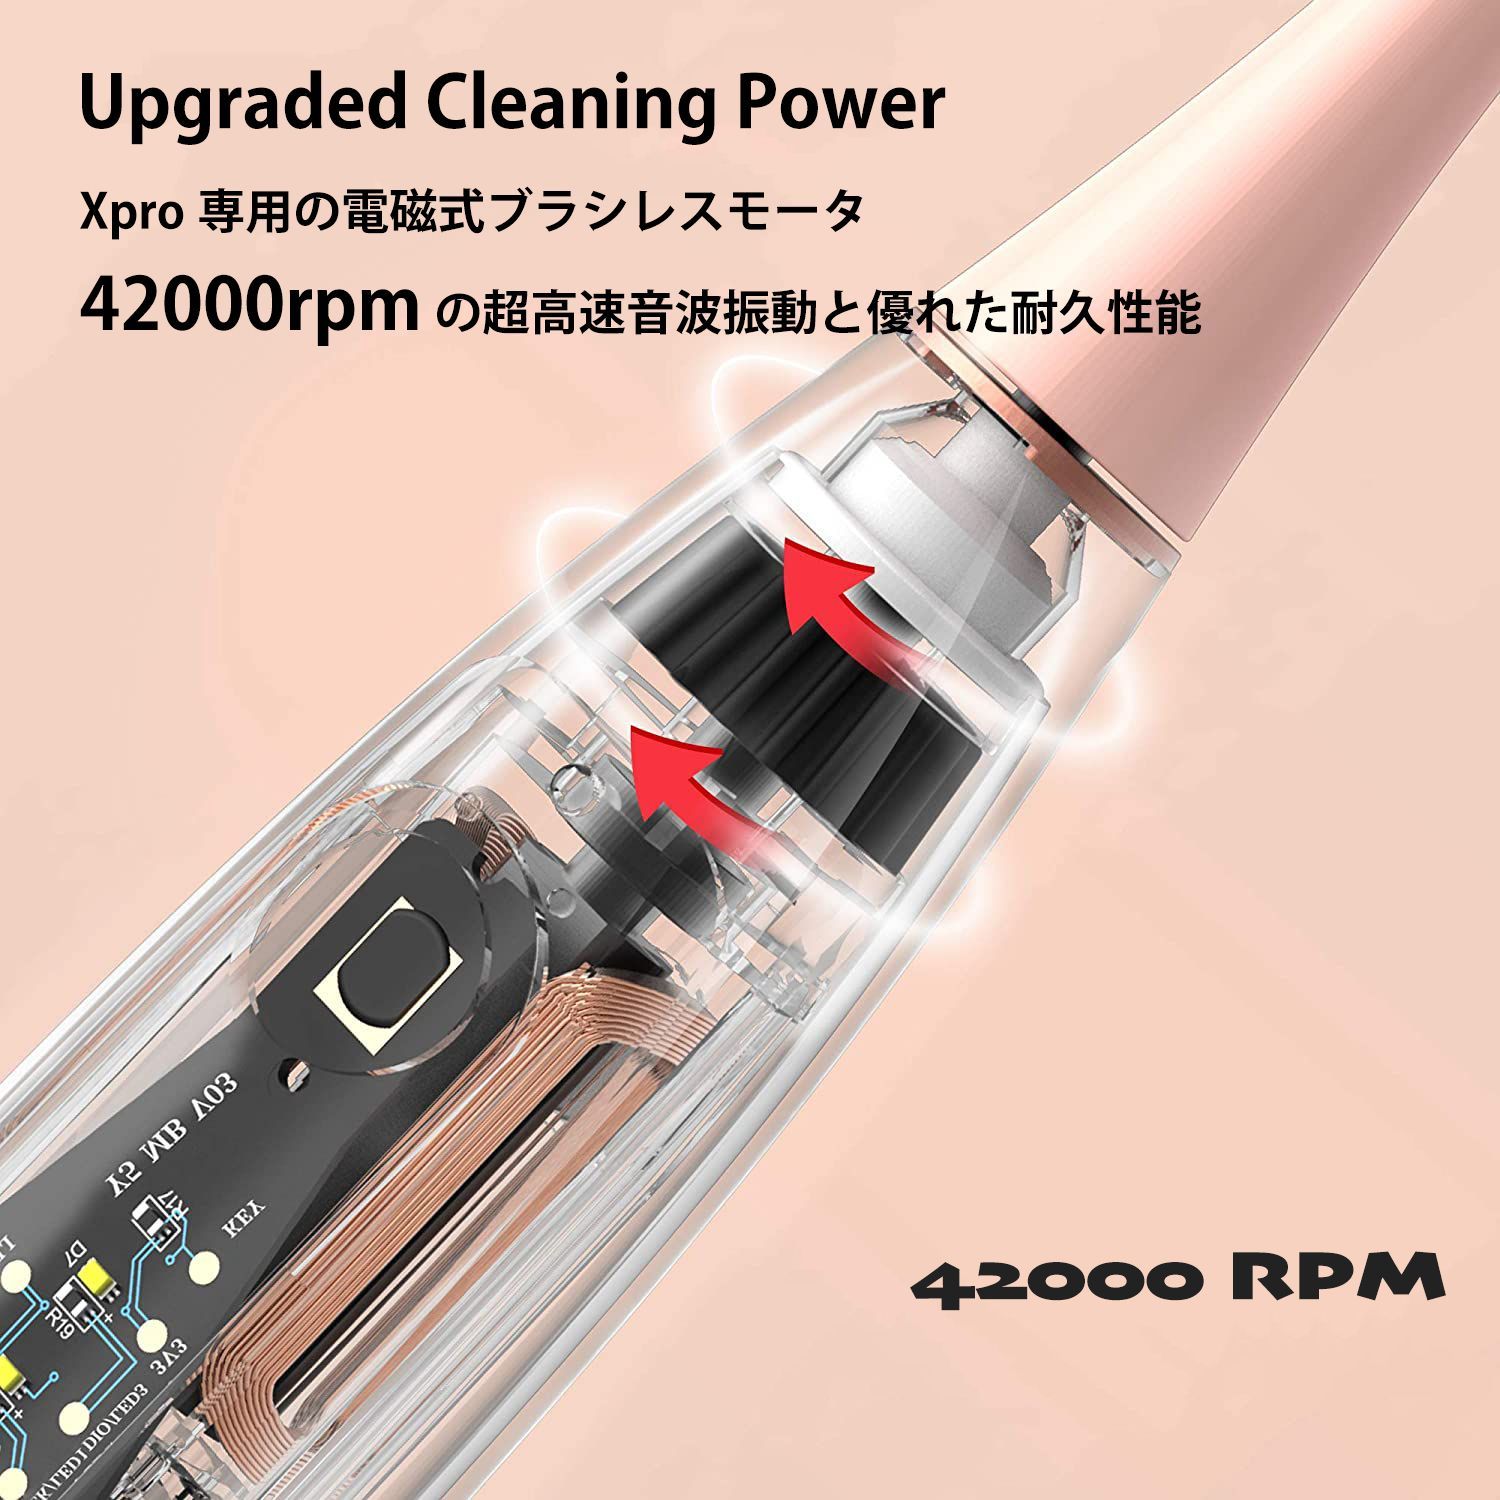 oclean Xpro 世界初液晶タッチパネル搭載のAI電動歯ブラシ - メルカリ